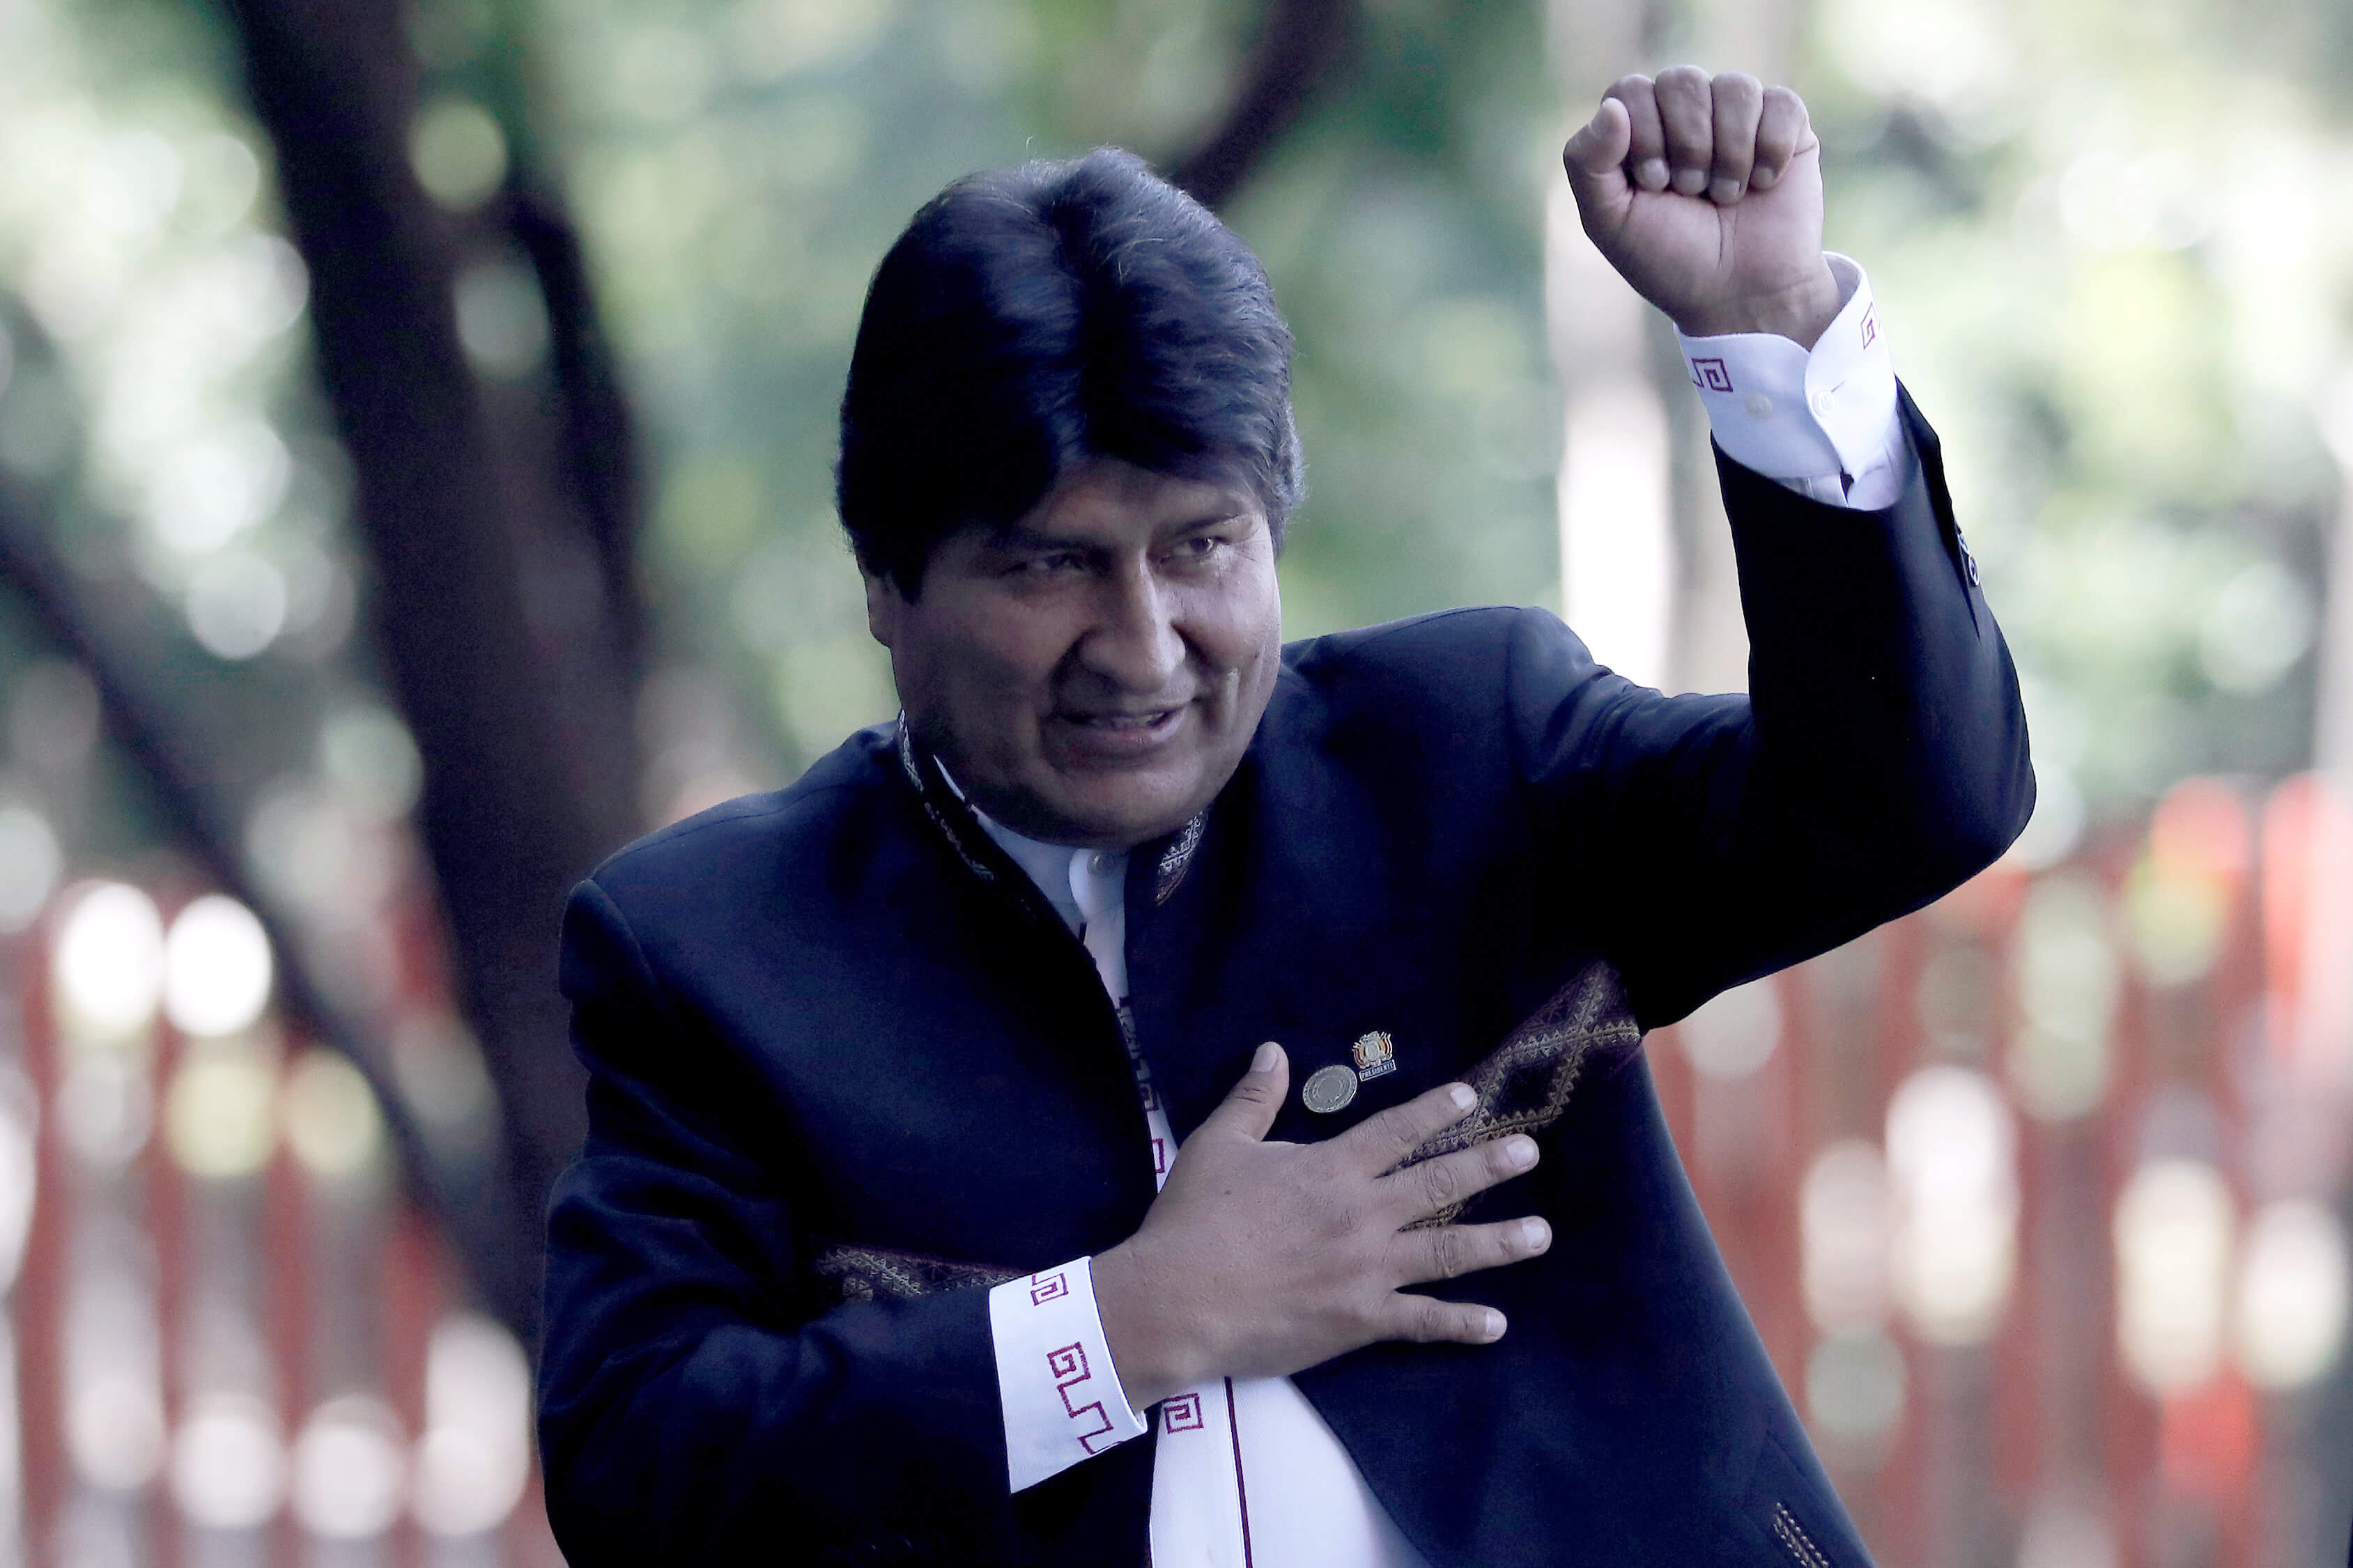 Dan luz verde a cuarta candidatura presidencial de Evo Morales